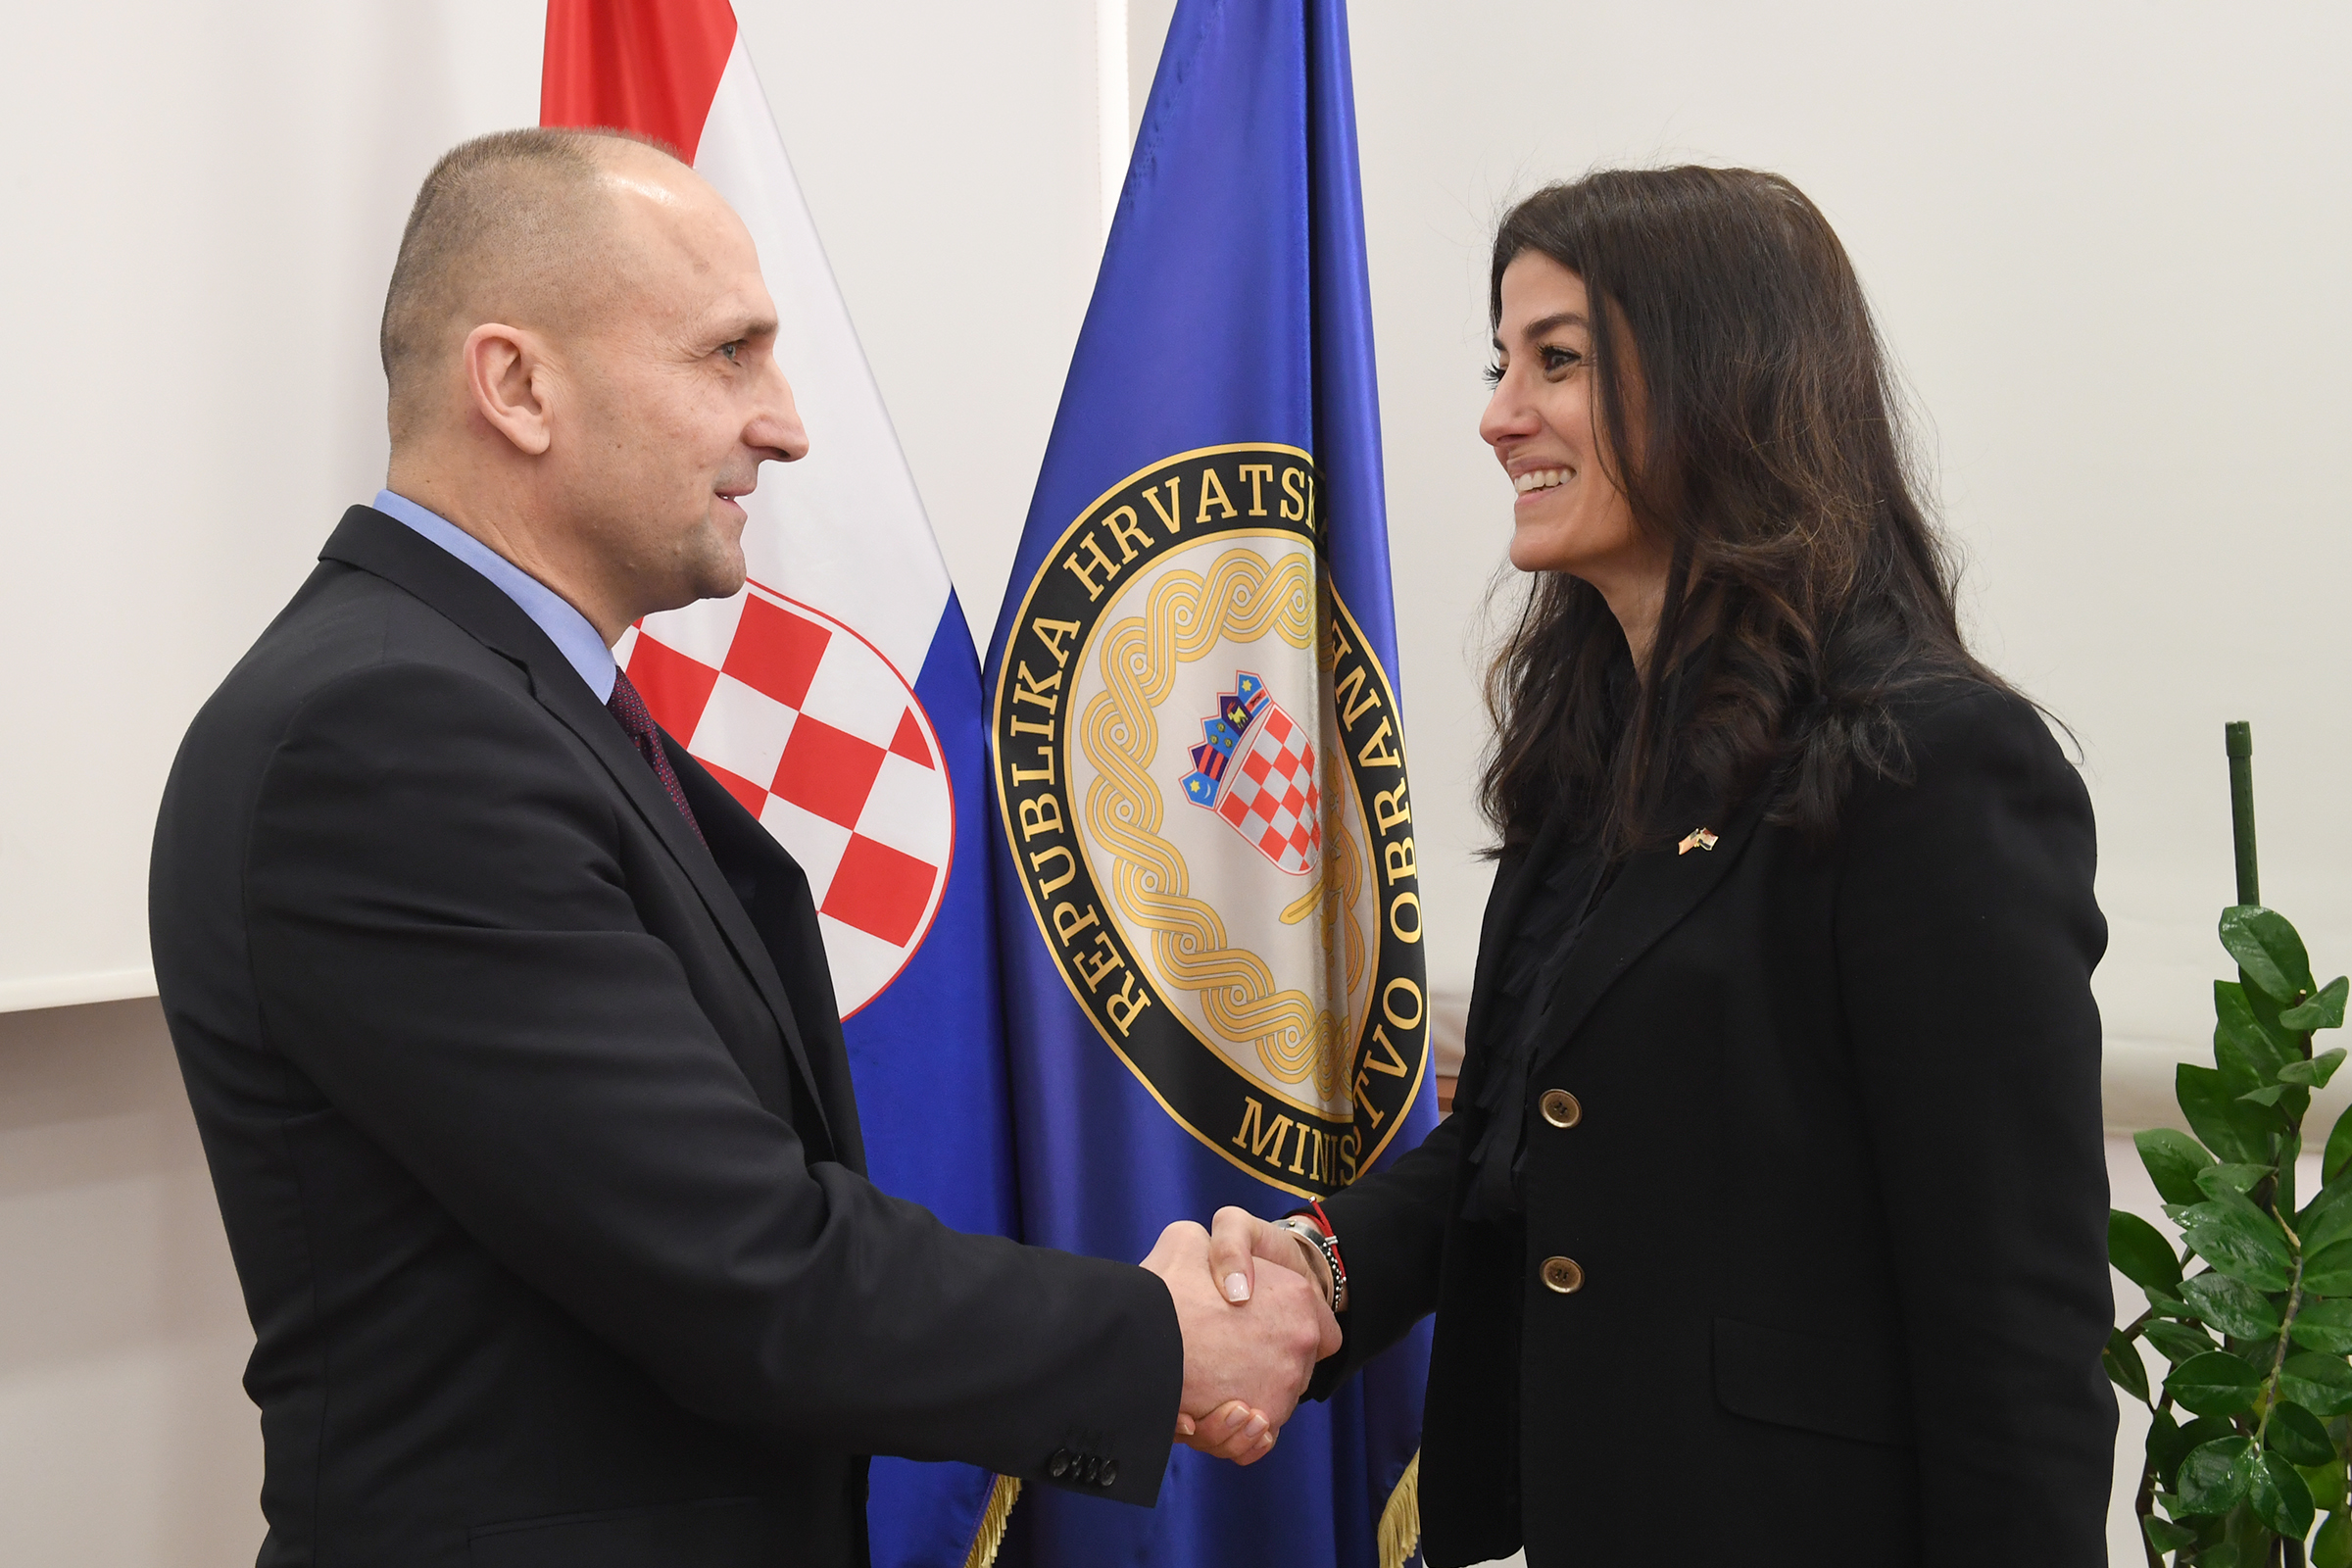 Sastanak ministra Anušića s veleposlanicom Sjedinjenih Američkih Država Nathalie Rayes